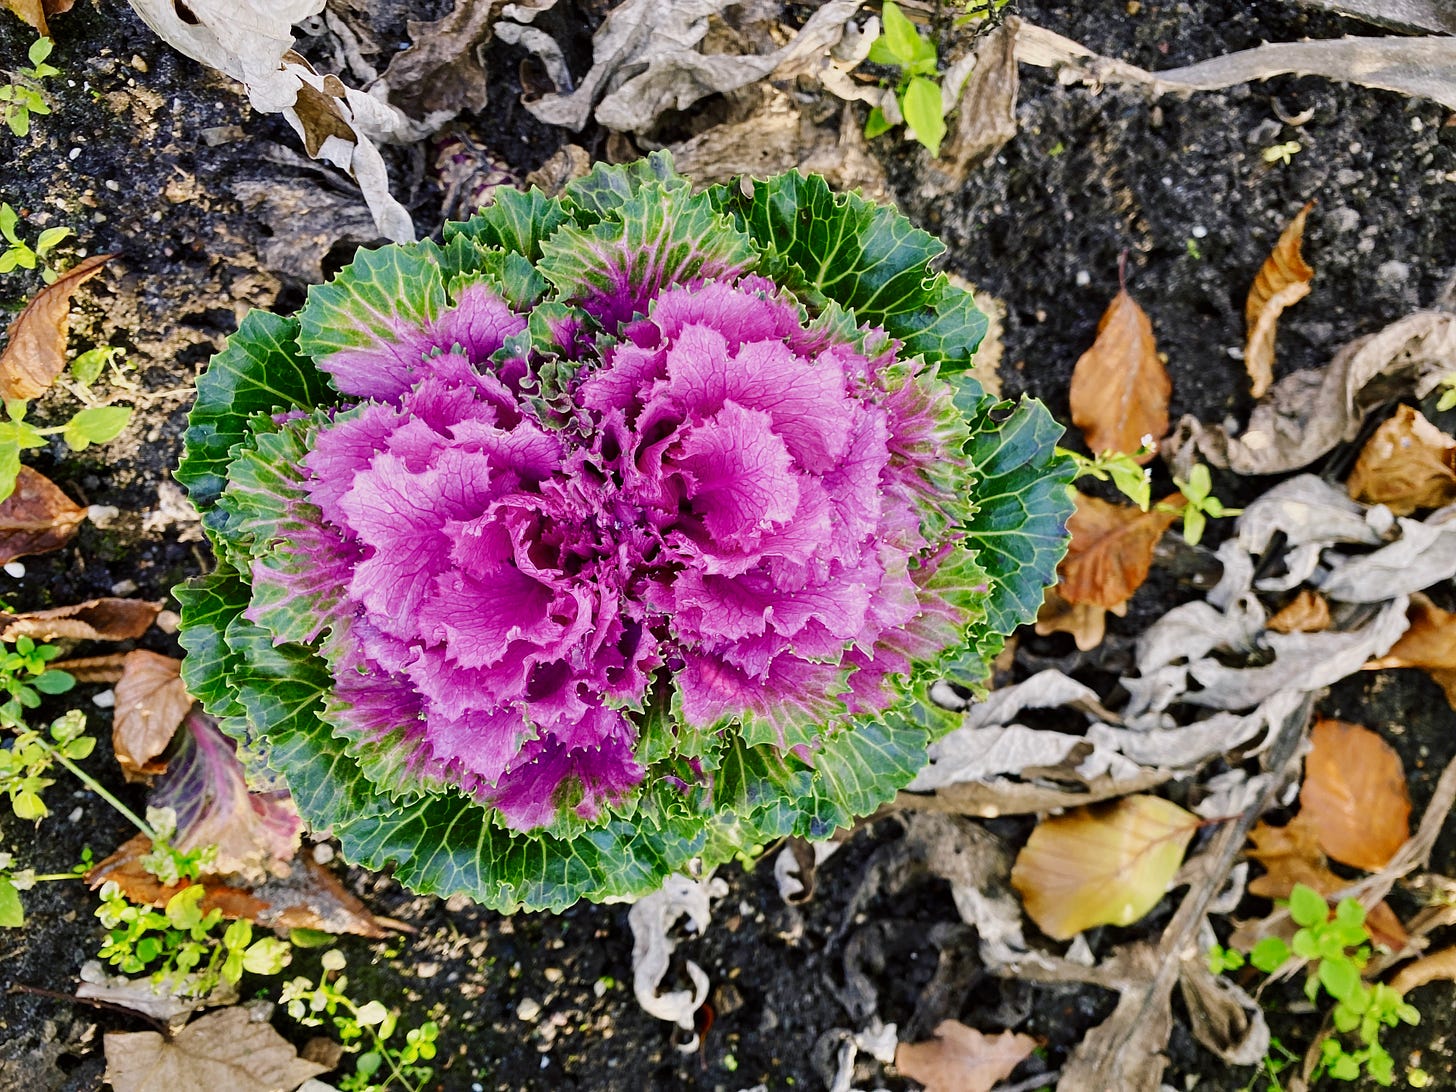 Foto de uma verdura similar a uma couve, mas que tem as folhas internas cor-de-rosa